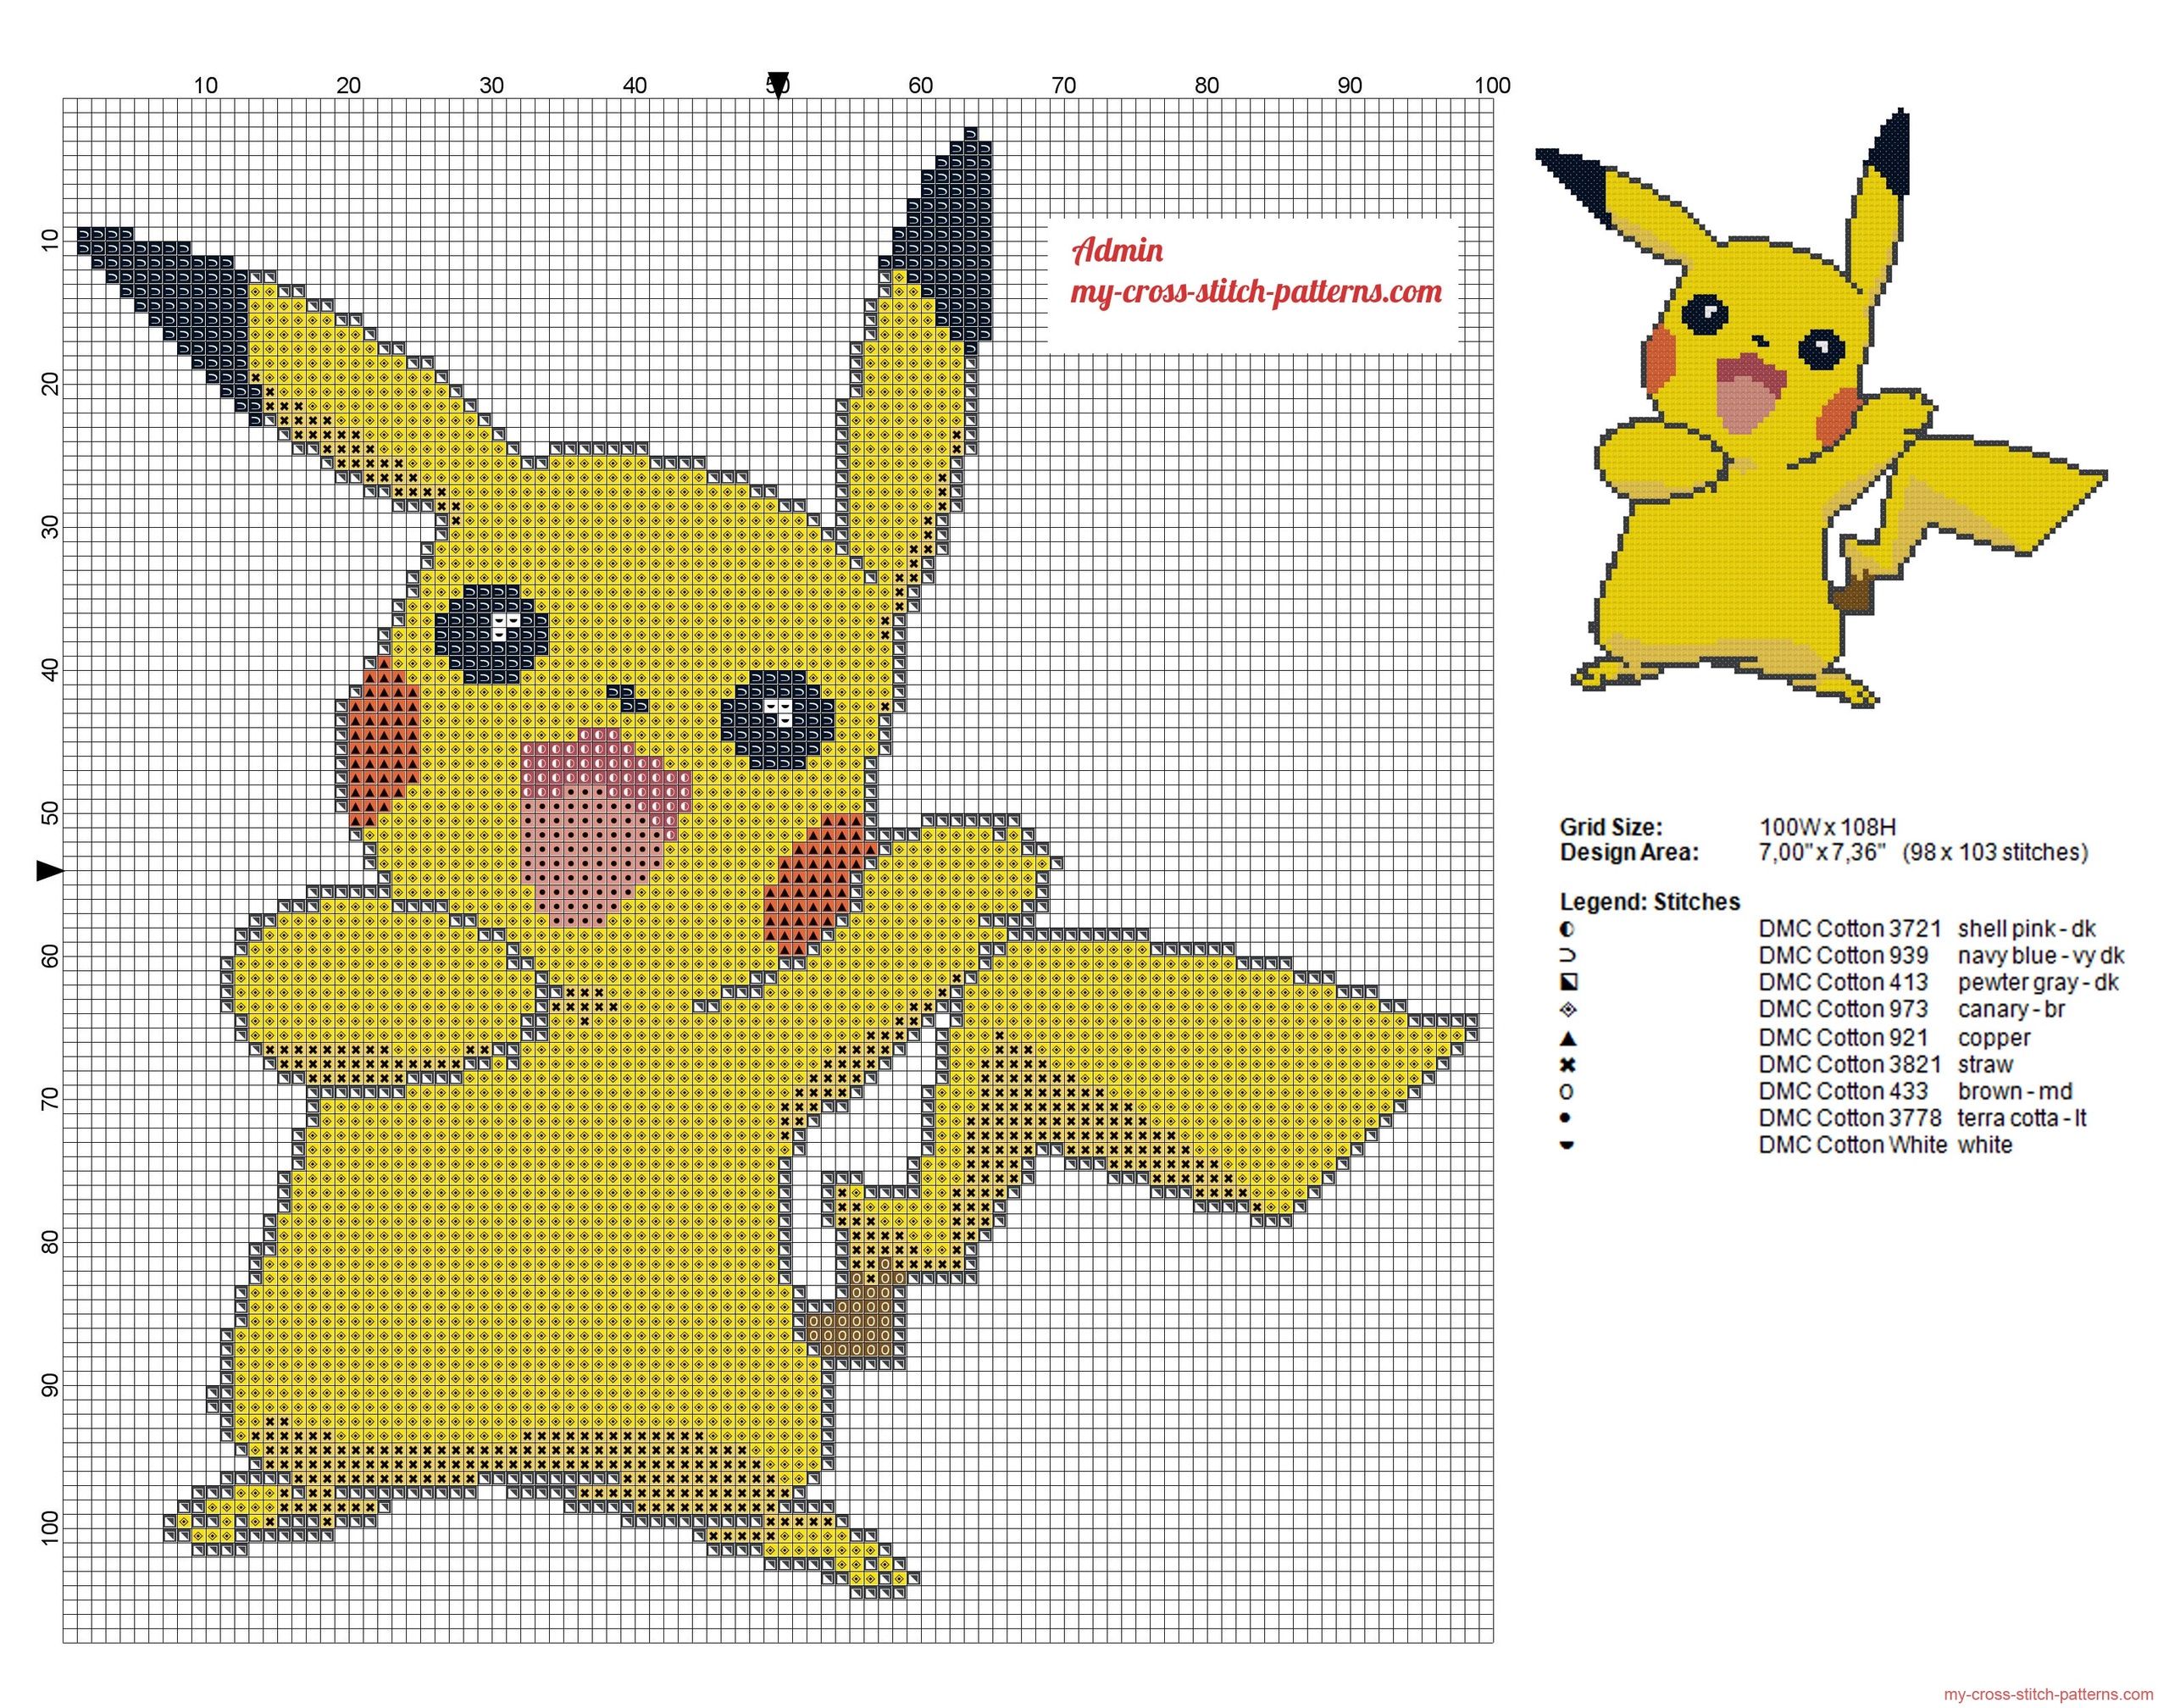 smiling_pikachu_pokemon_cross_stitch_pattern